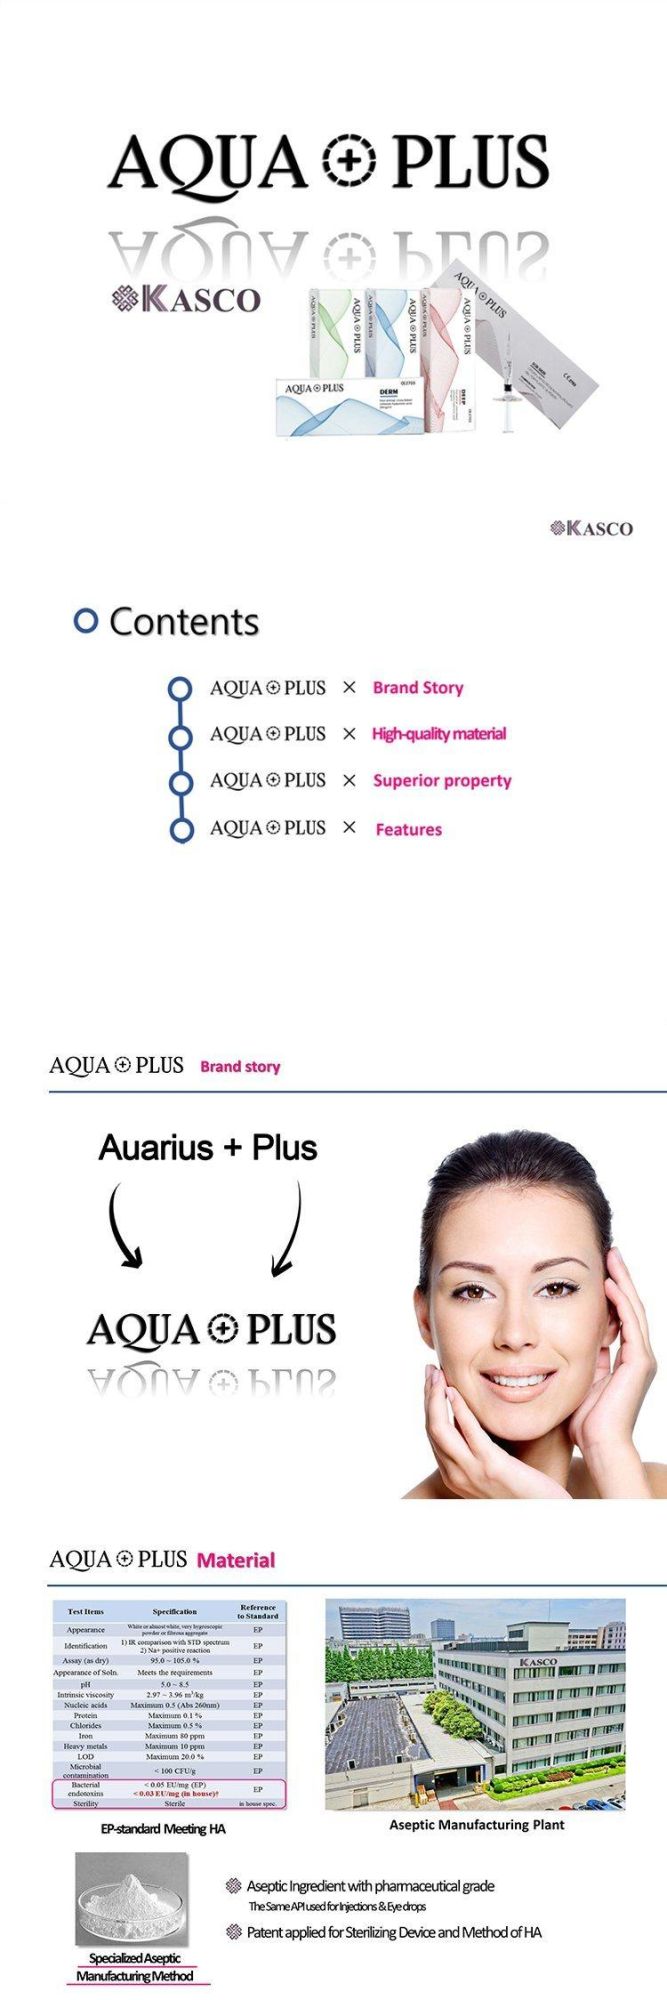 Aqua Plus Ha Injectable Dermal Fillers 1 Ml/Vial Hyaluronic Acid Gel Injection